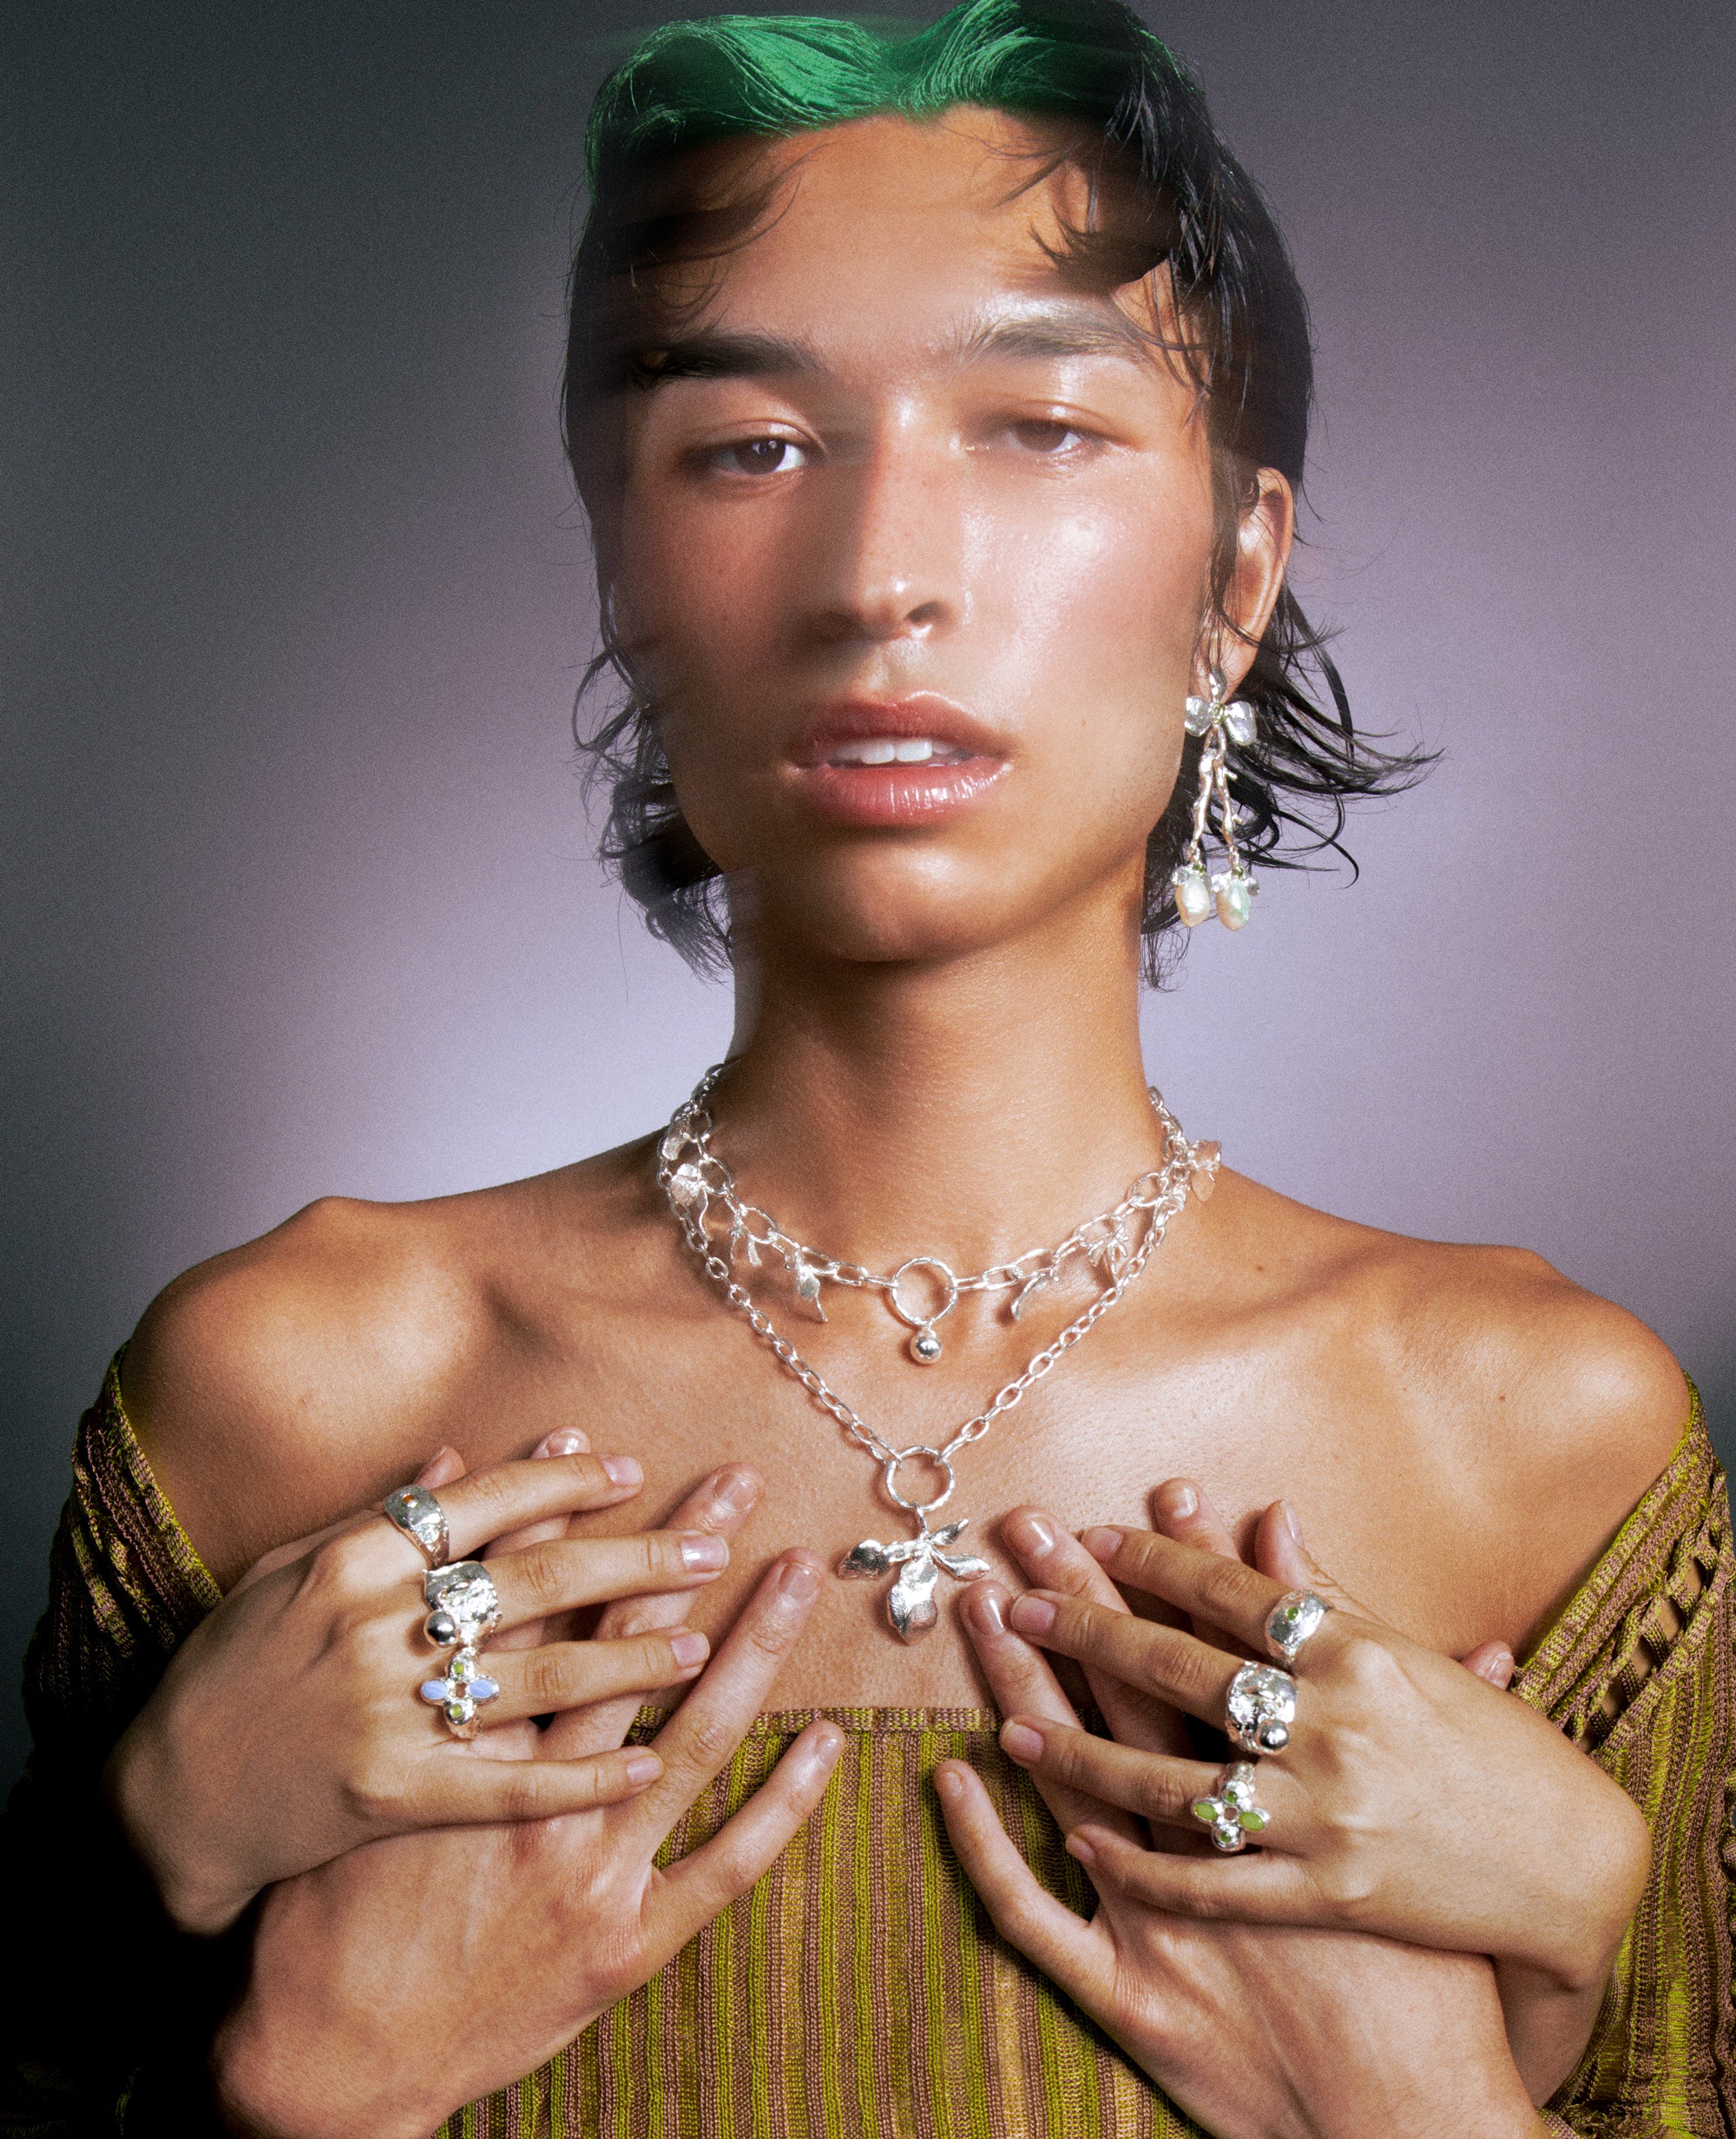 COLLIER FLORALIS // collier en argent - ORA-C jewelry - bijoux faits à la main par la designer indépendante montréalaise Caroline Pham